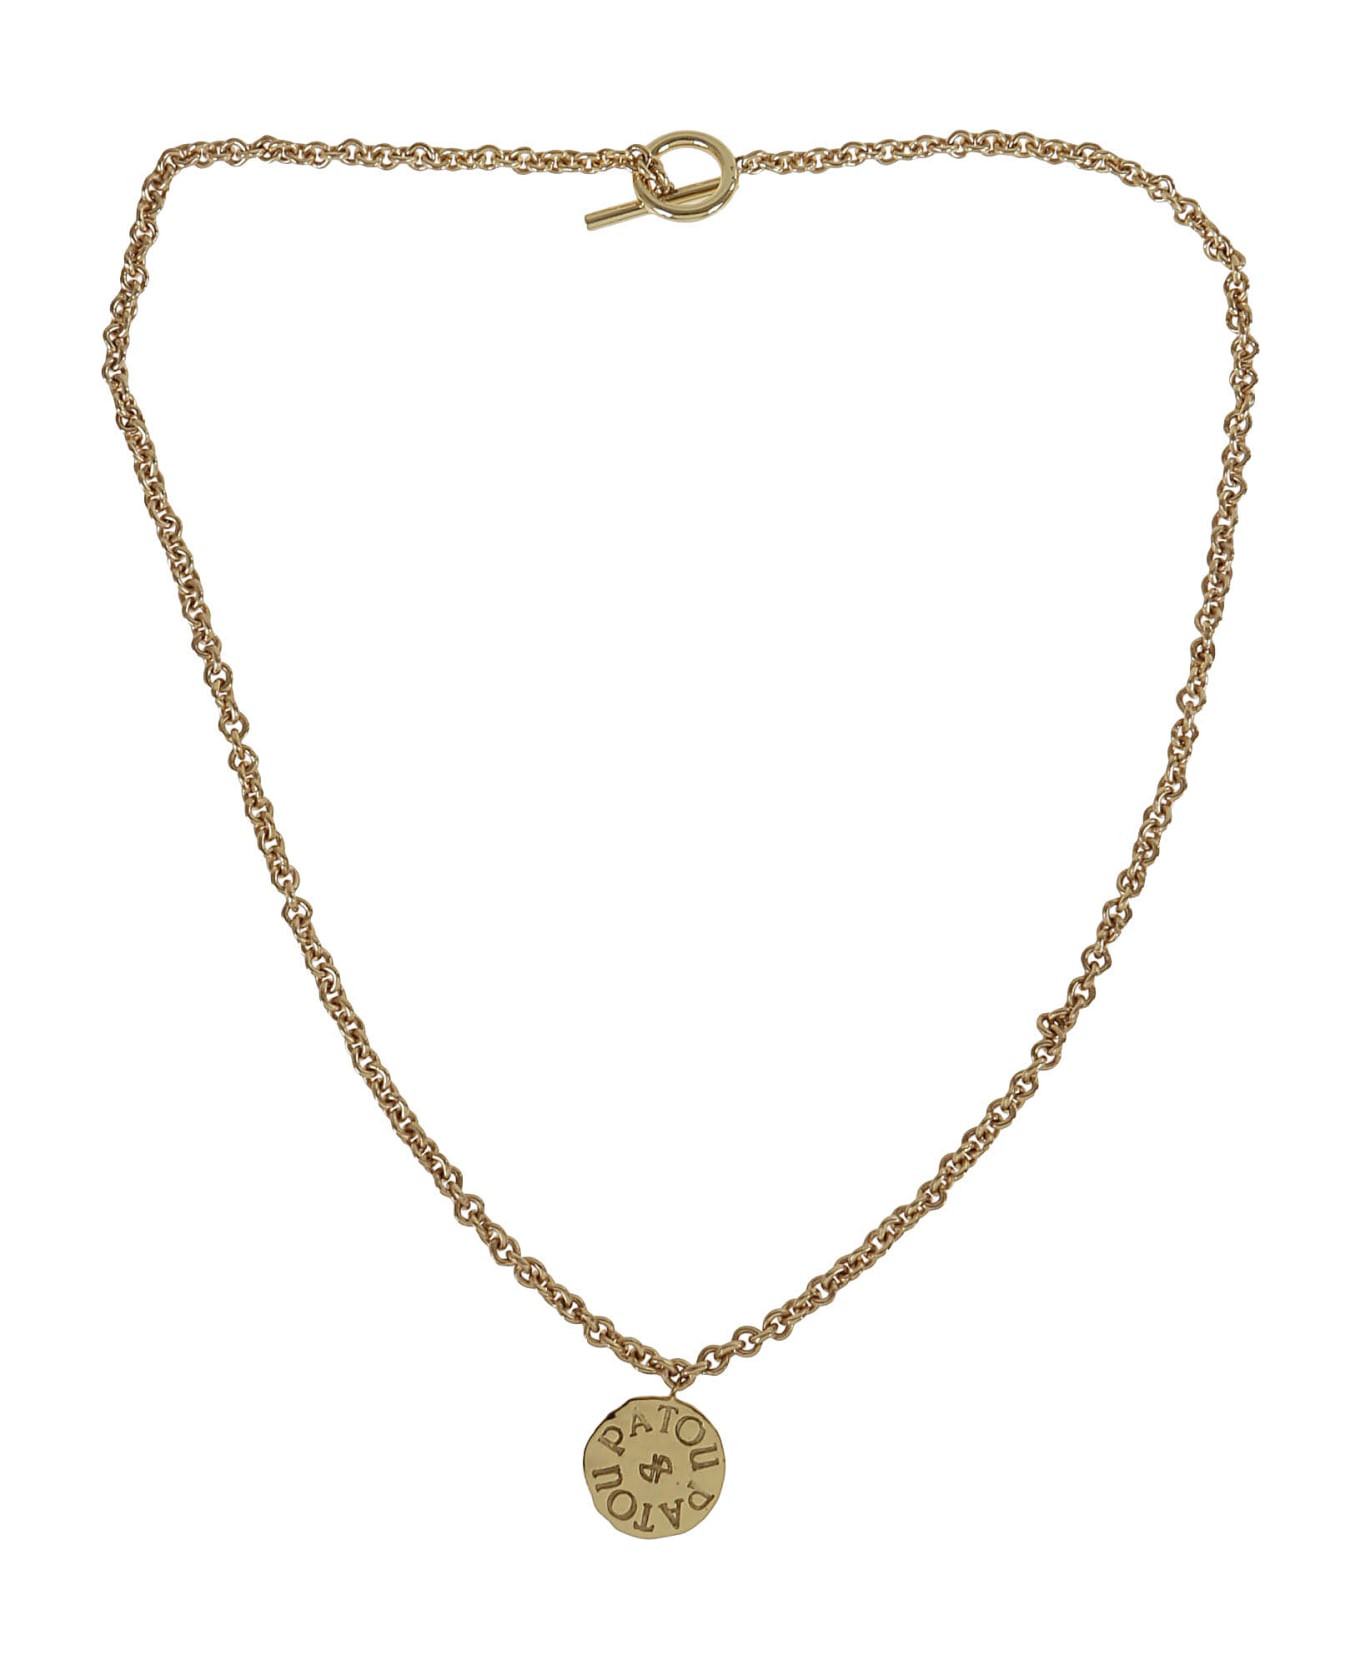 Patou Antique Coin Charm Necklace - G Gold